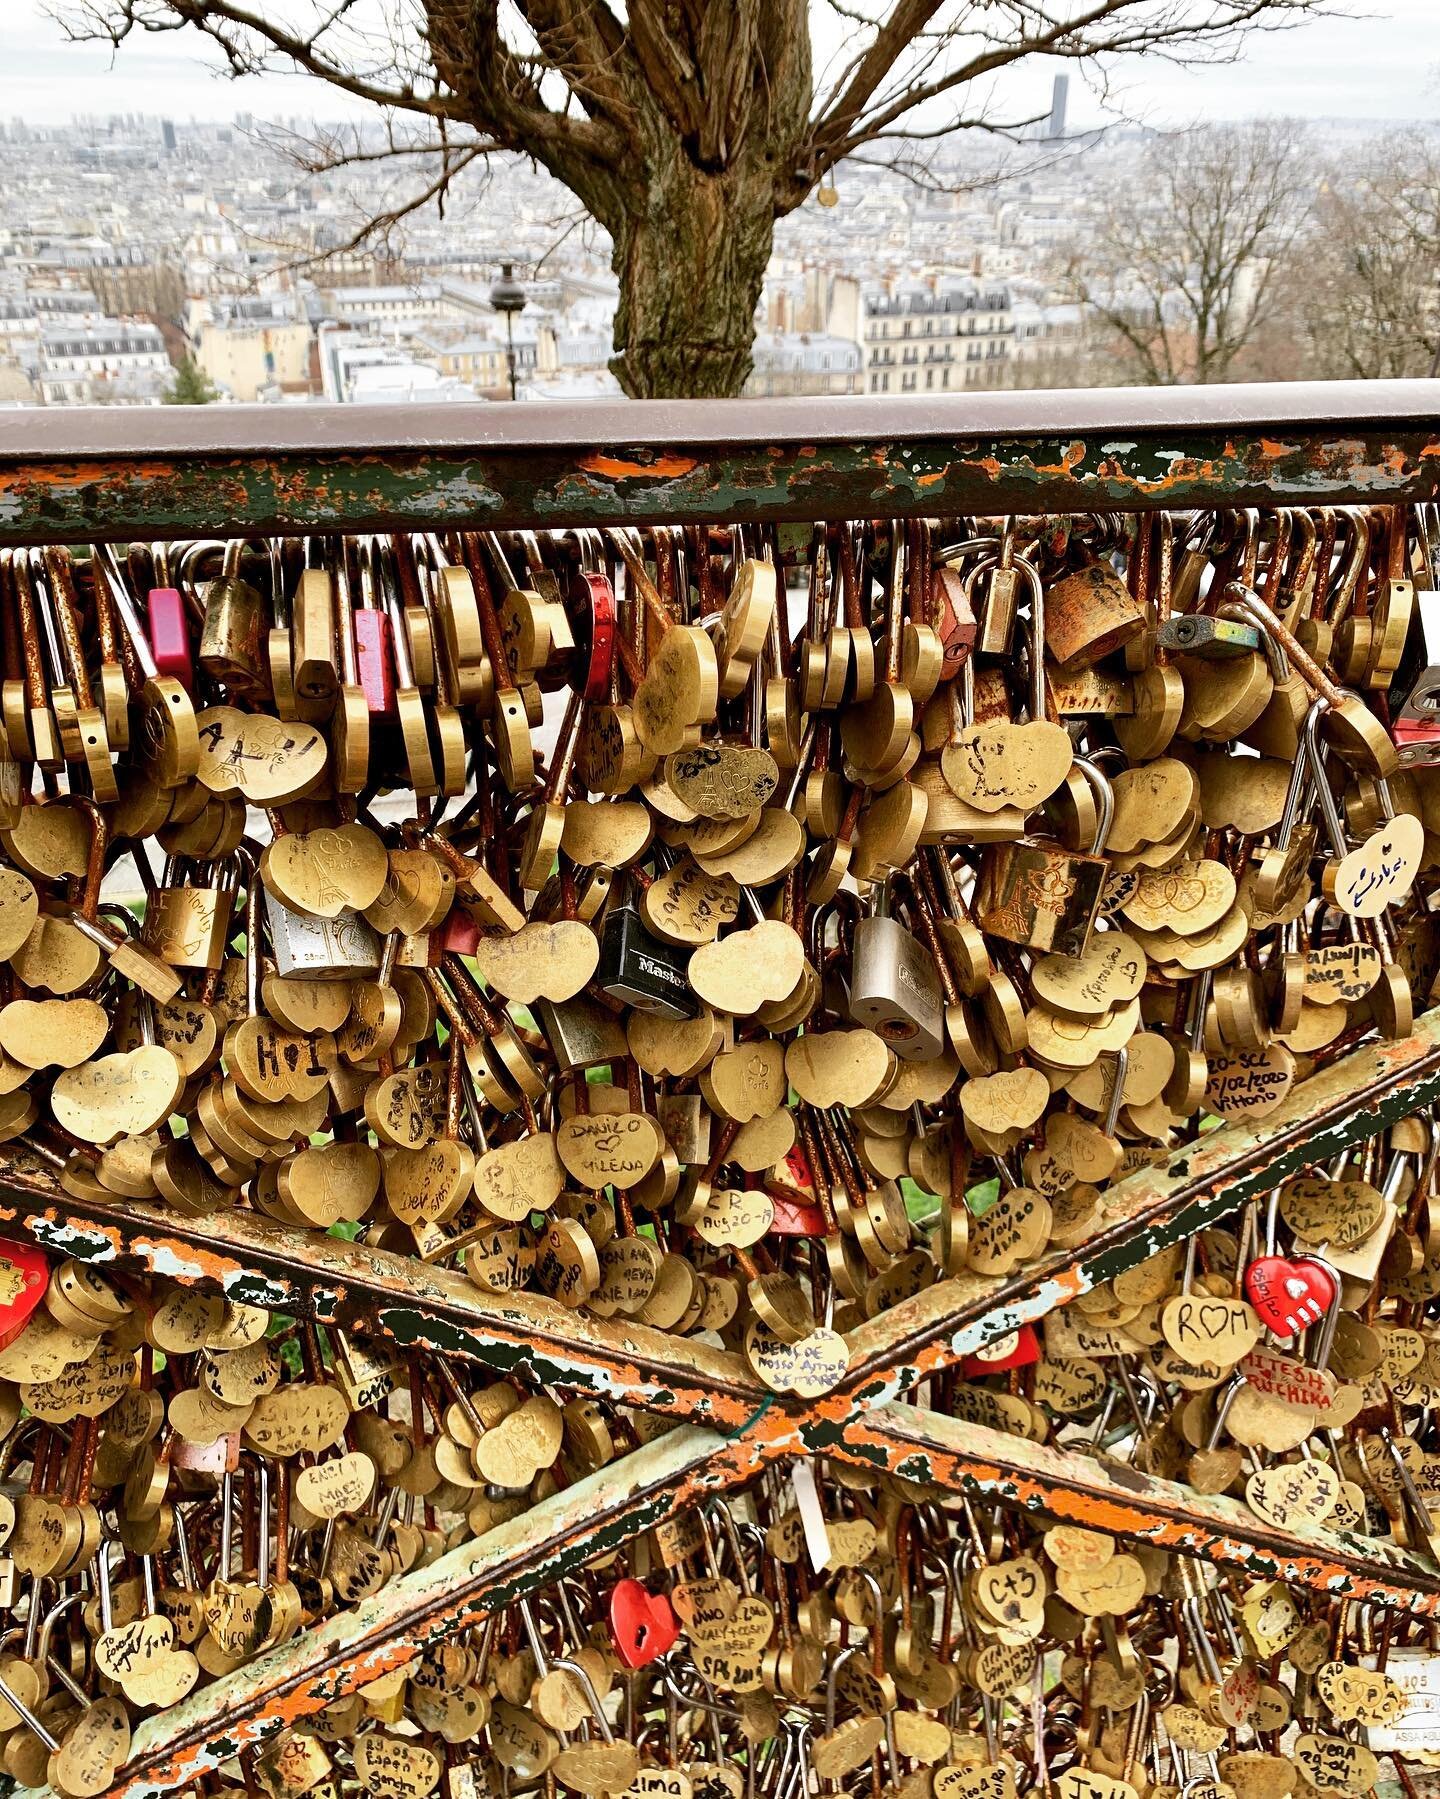 Locks of love for Paris ❤️#paris #Montmartre #france #sacrecouer #jaimeparis #wanderlust #travel #worldtraveler #europe #adventure #wandersnevercease